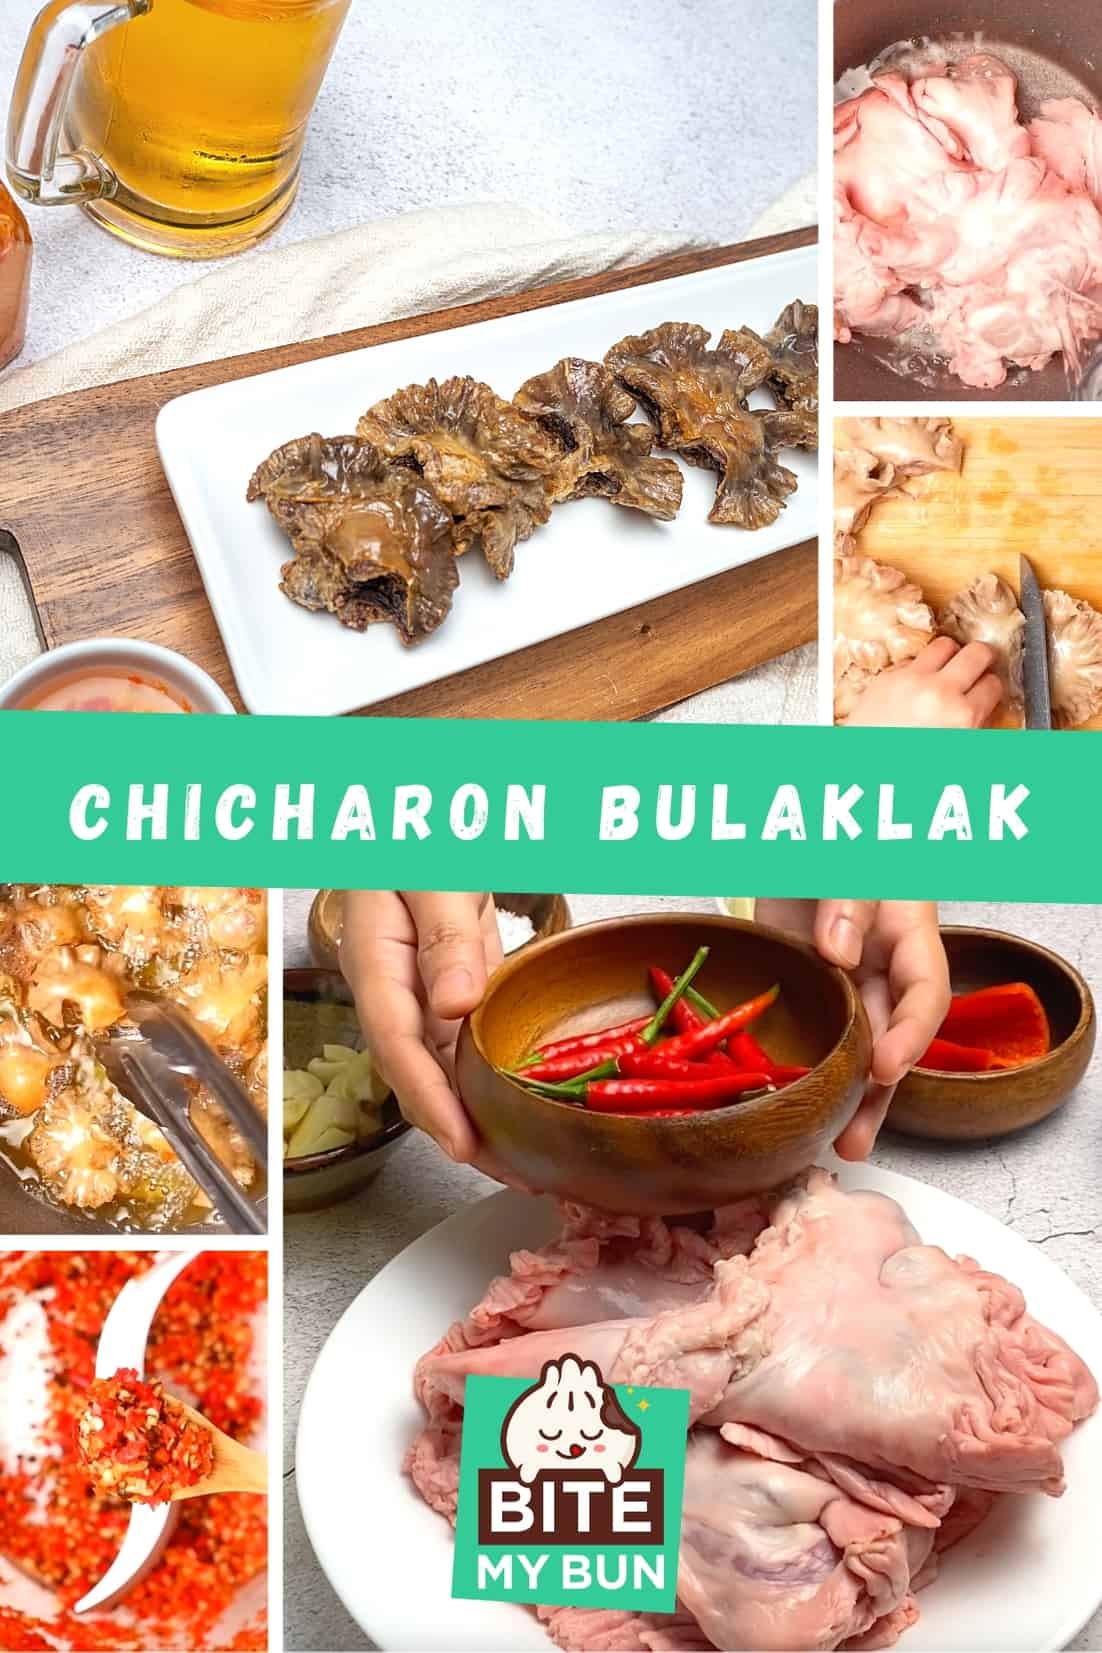 chicharon bulaklak met pikante azijn